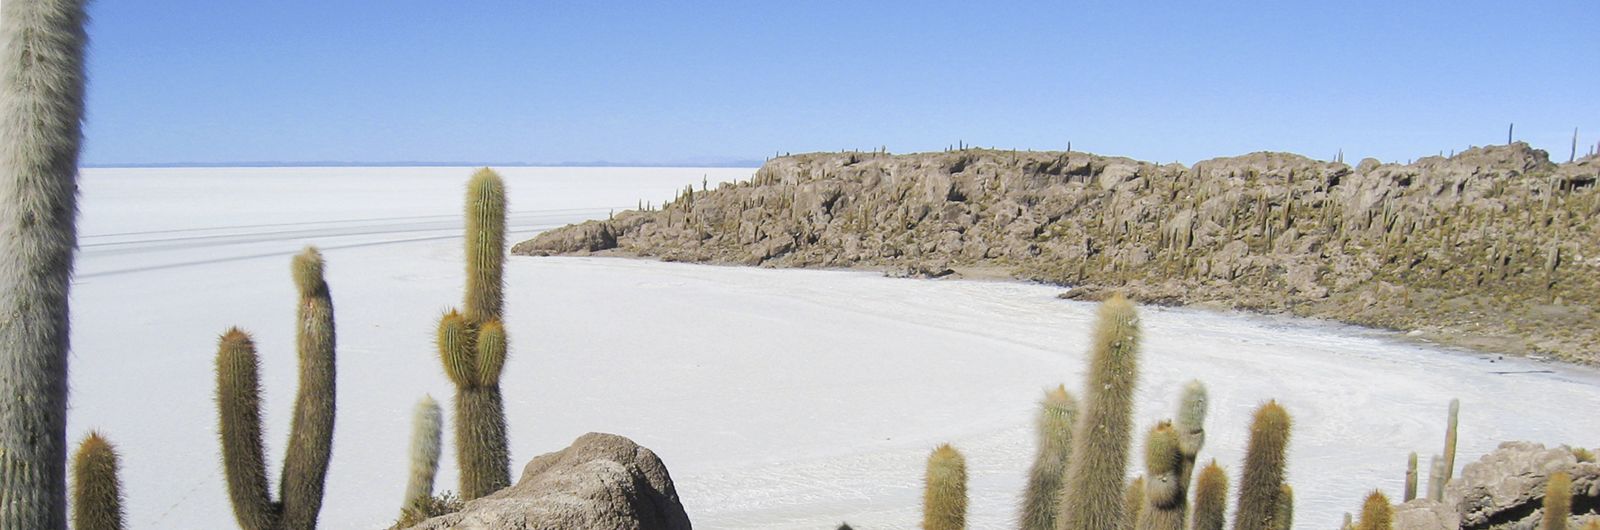 Salta - Uyuni - Atacama - Isla de Pascua